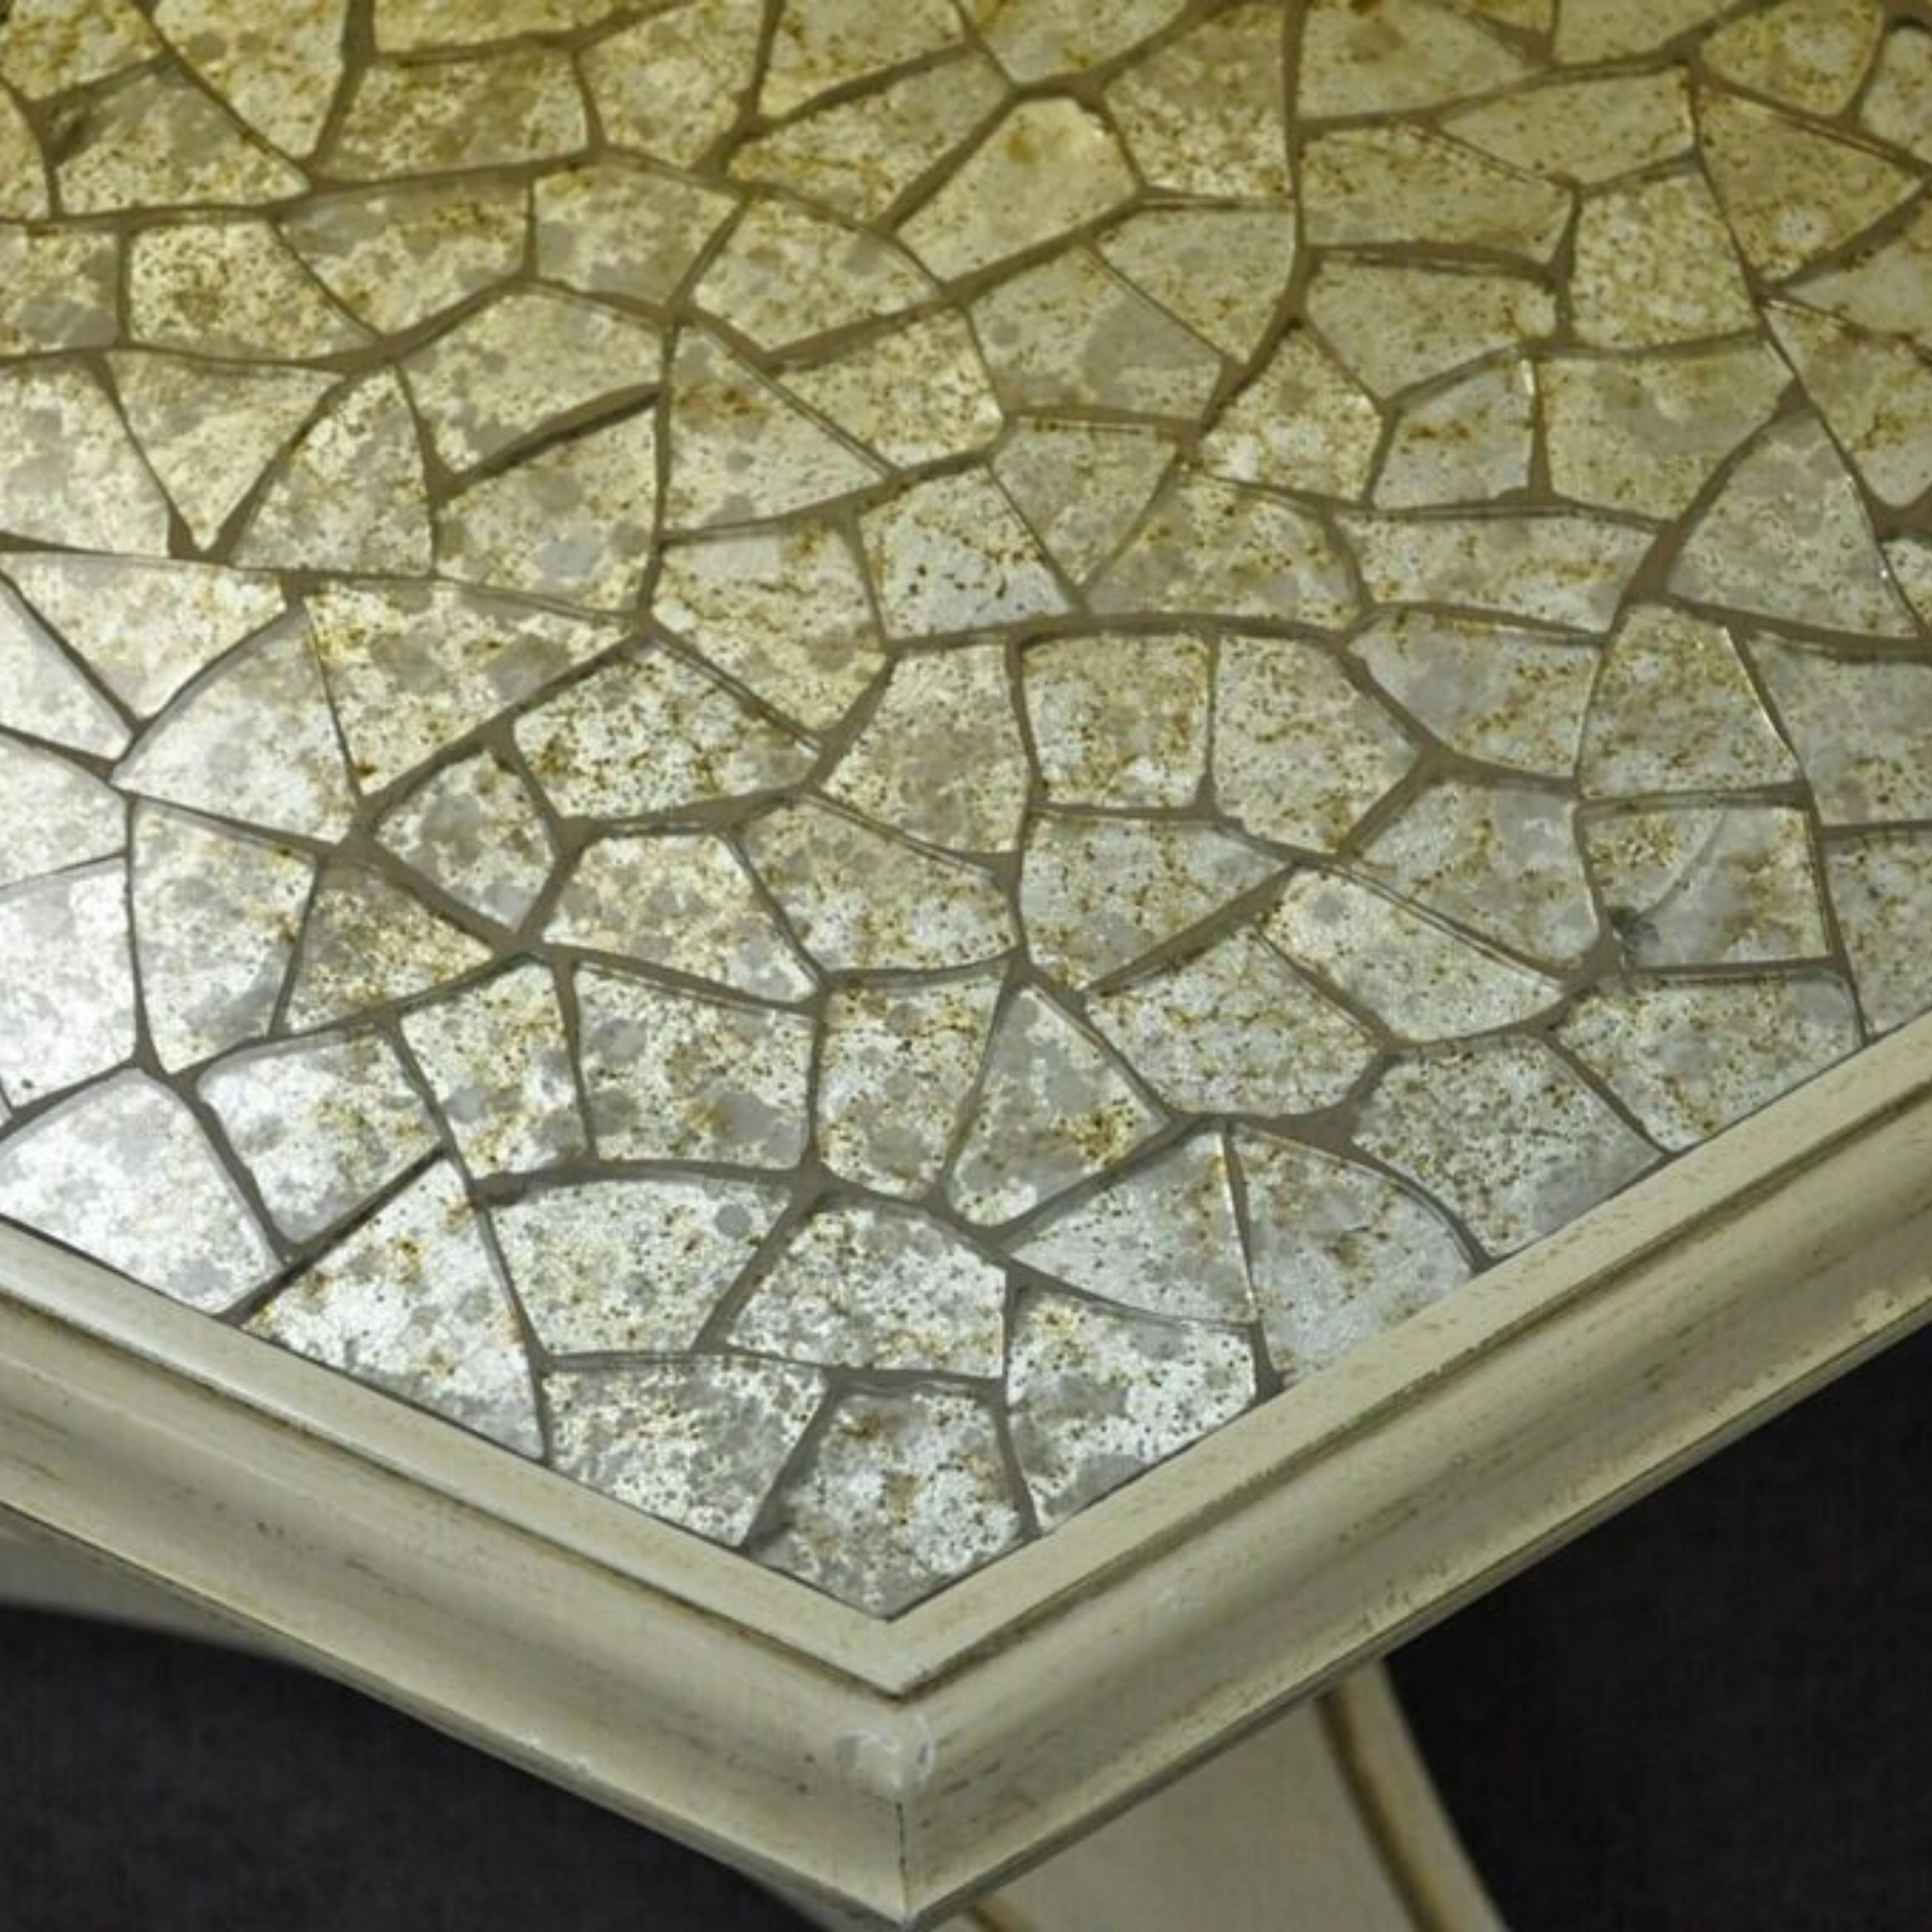 Hollywood Regency Mosaic Glass Tile Top Low Pedestal Side Tables - a Pair. Les objets présentent des plateaux en mosaïque de verre brisé, des bases de piédestal en forme d'urne avec des garnitures dorées, un très bel ensemble vintage. Circa Mid 20th